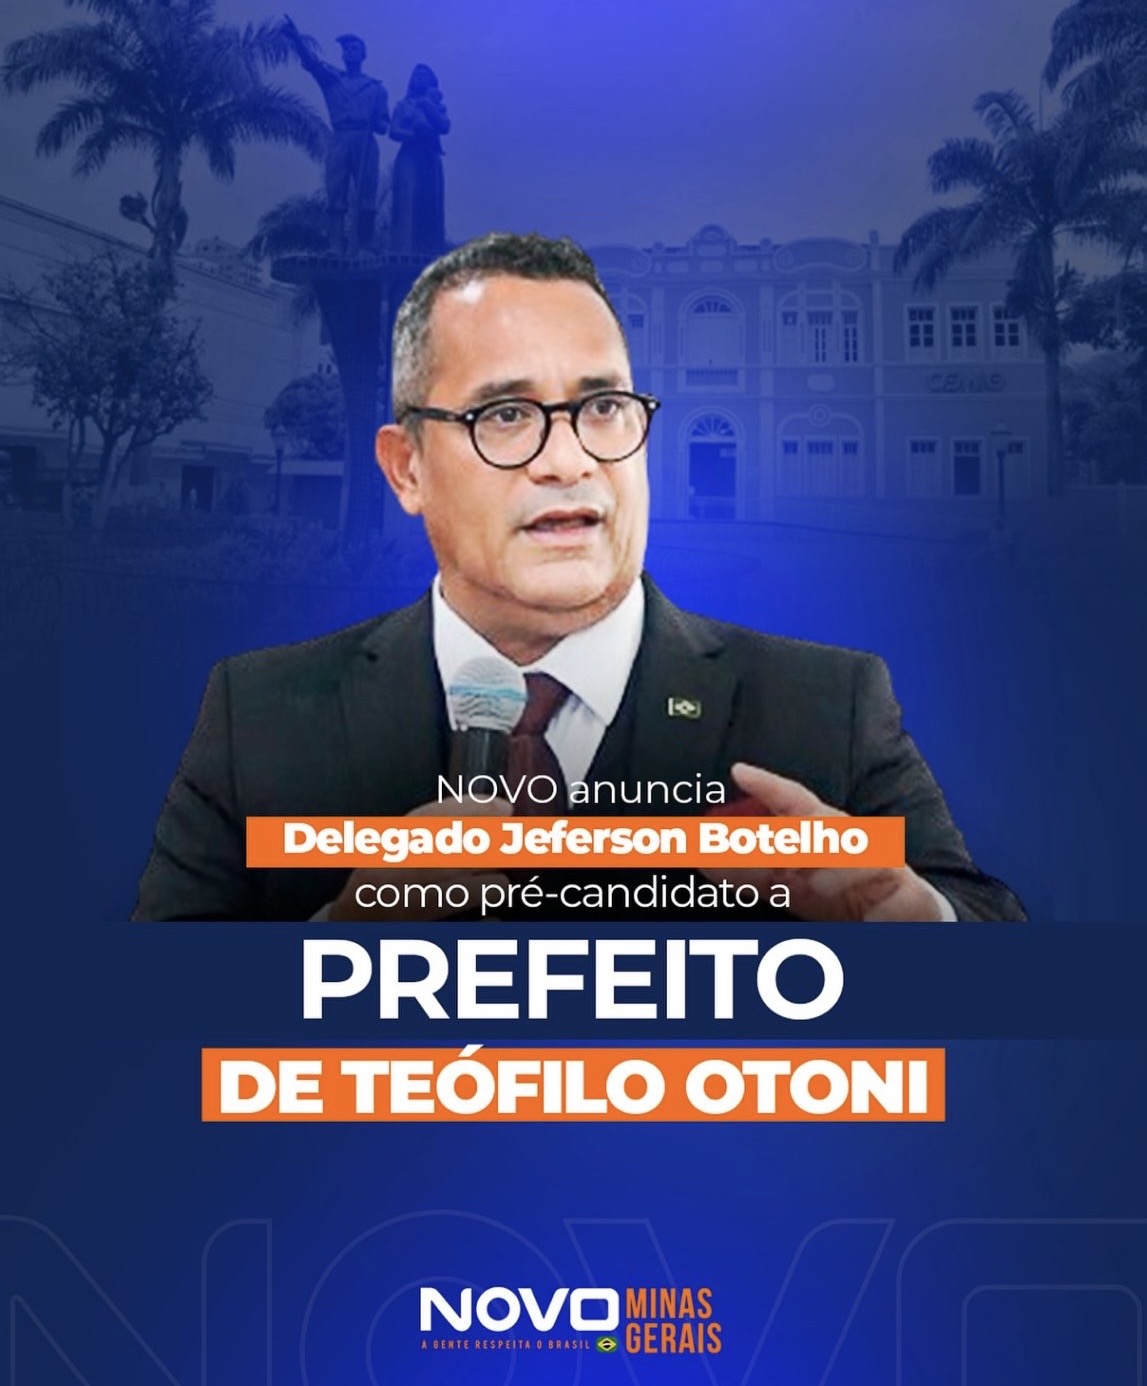 Jéferson Botelho é anunciado como pré-candidato a prefeito de Teófilo Otoni pelo Novo de Minas Gerais, partido de Romeu Zema